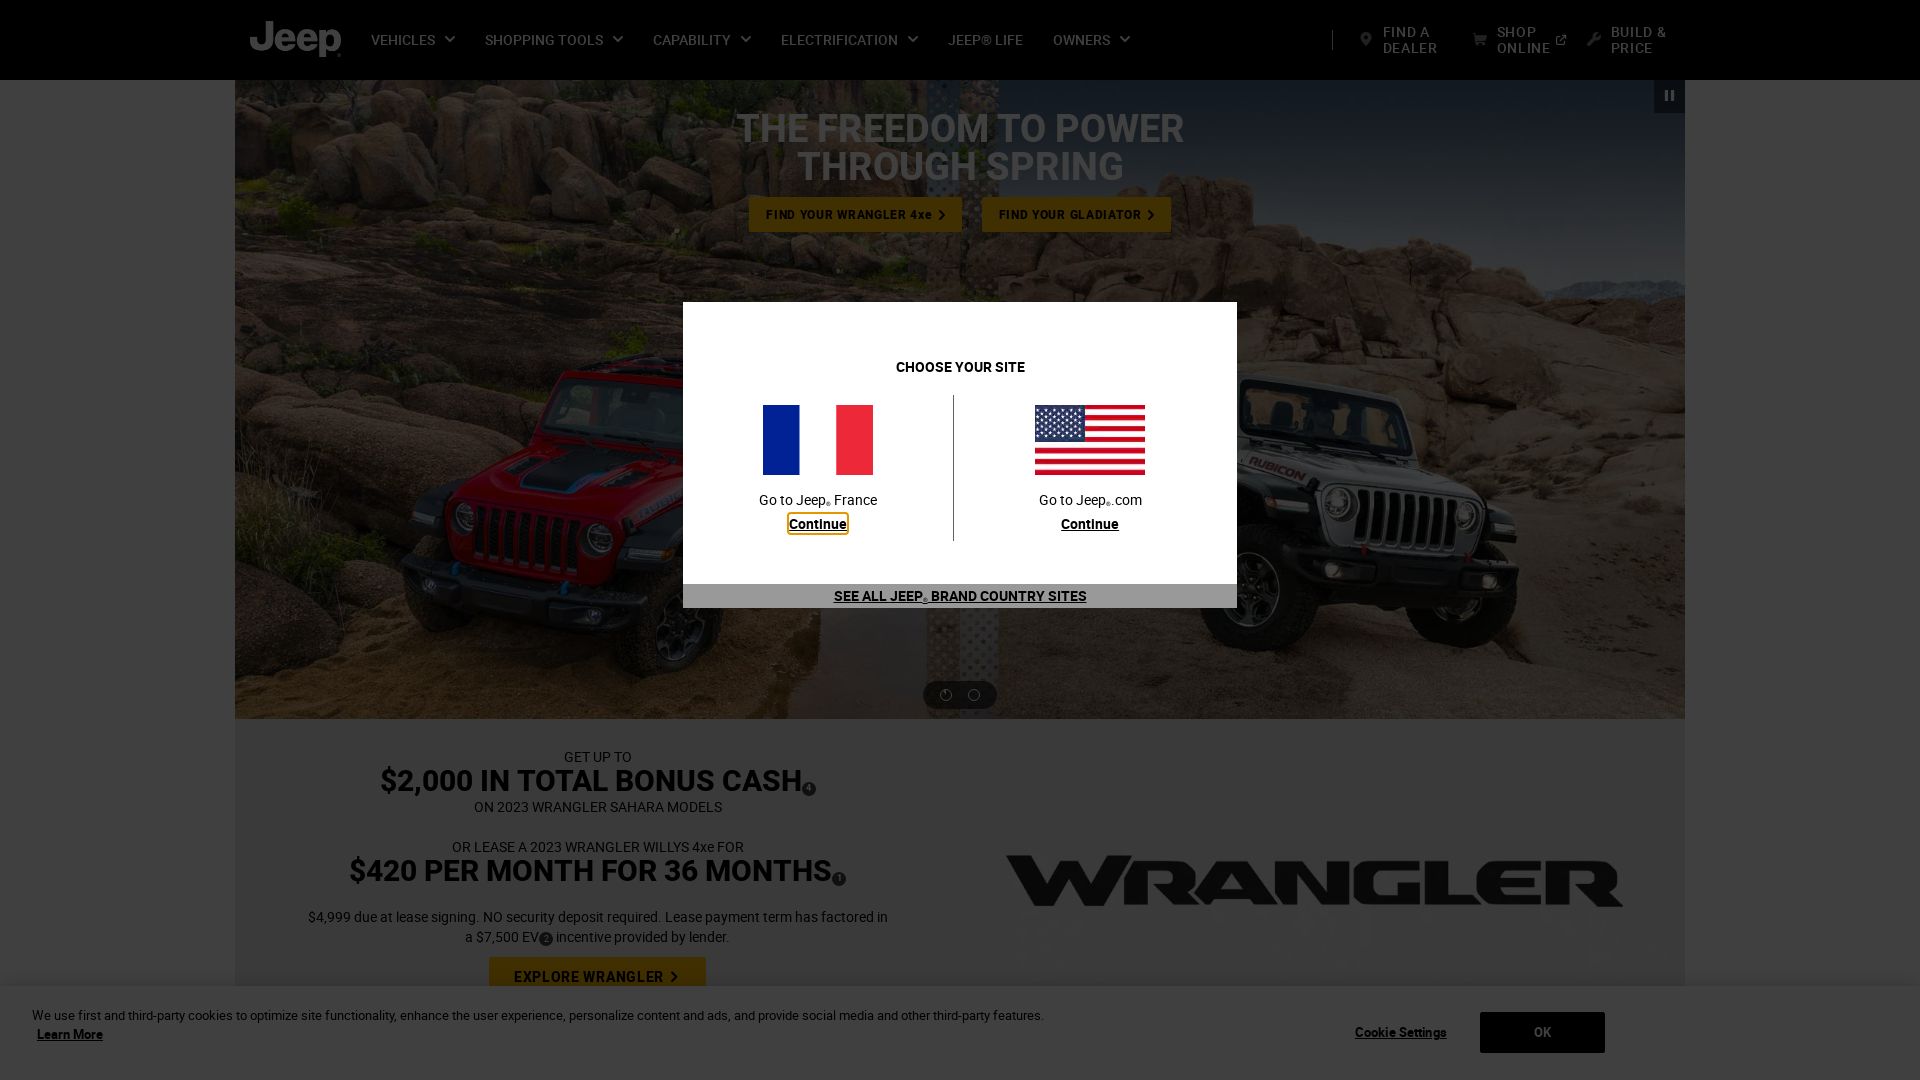 Stato del sito web jeep.com è   ONLINE